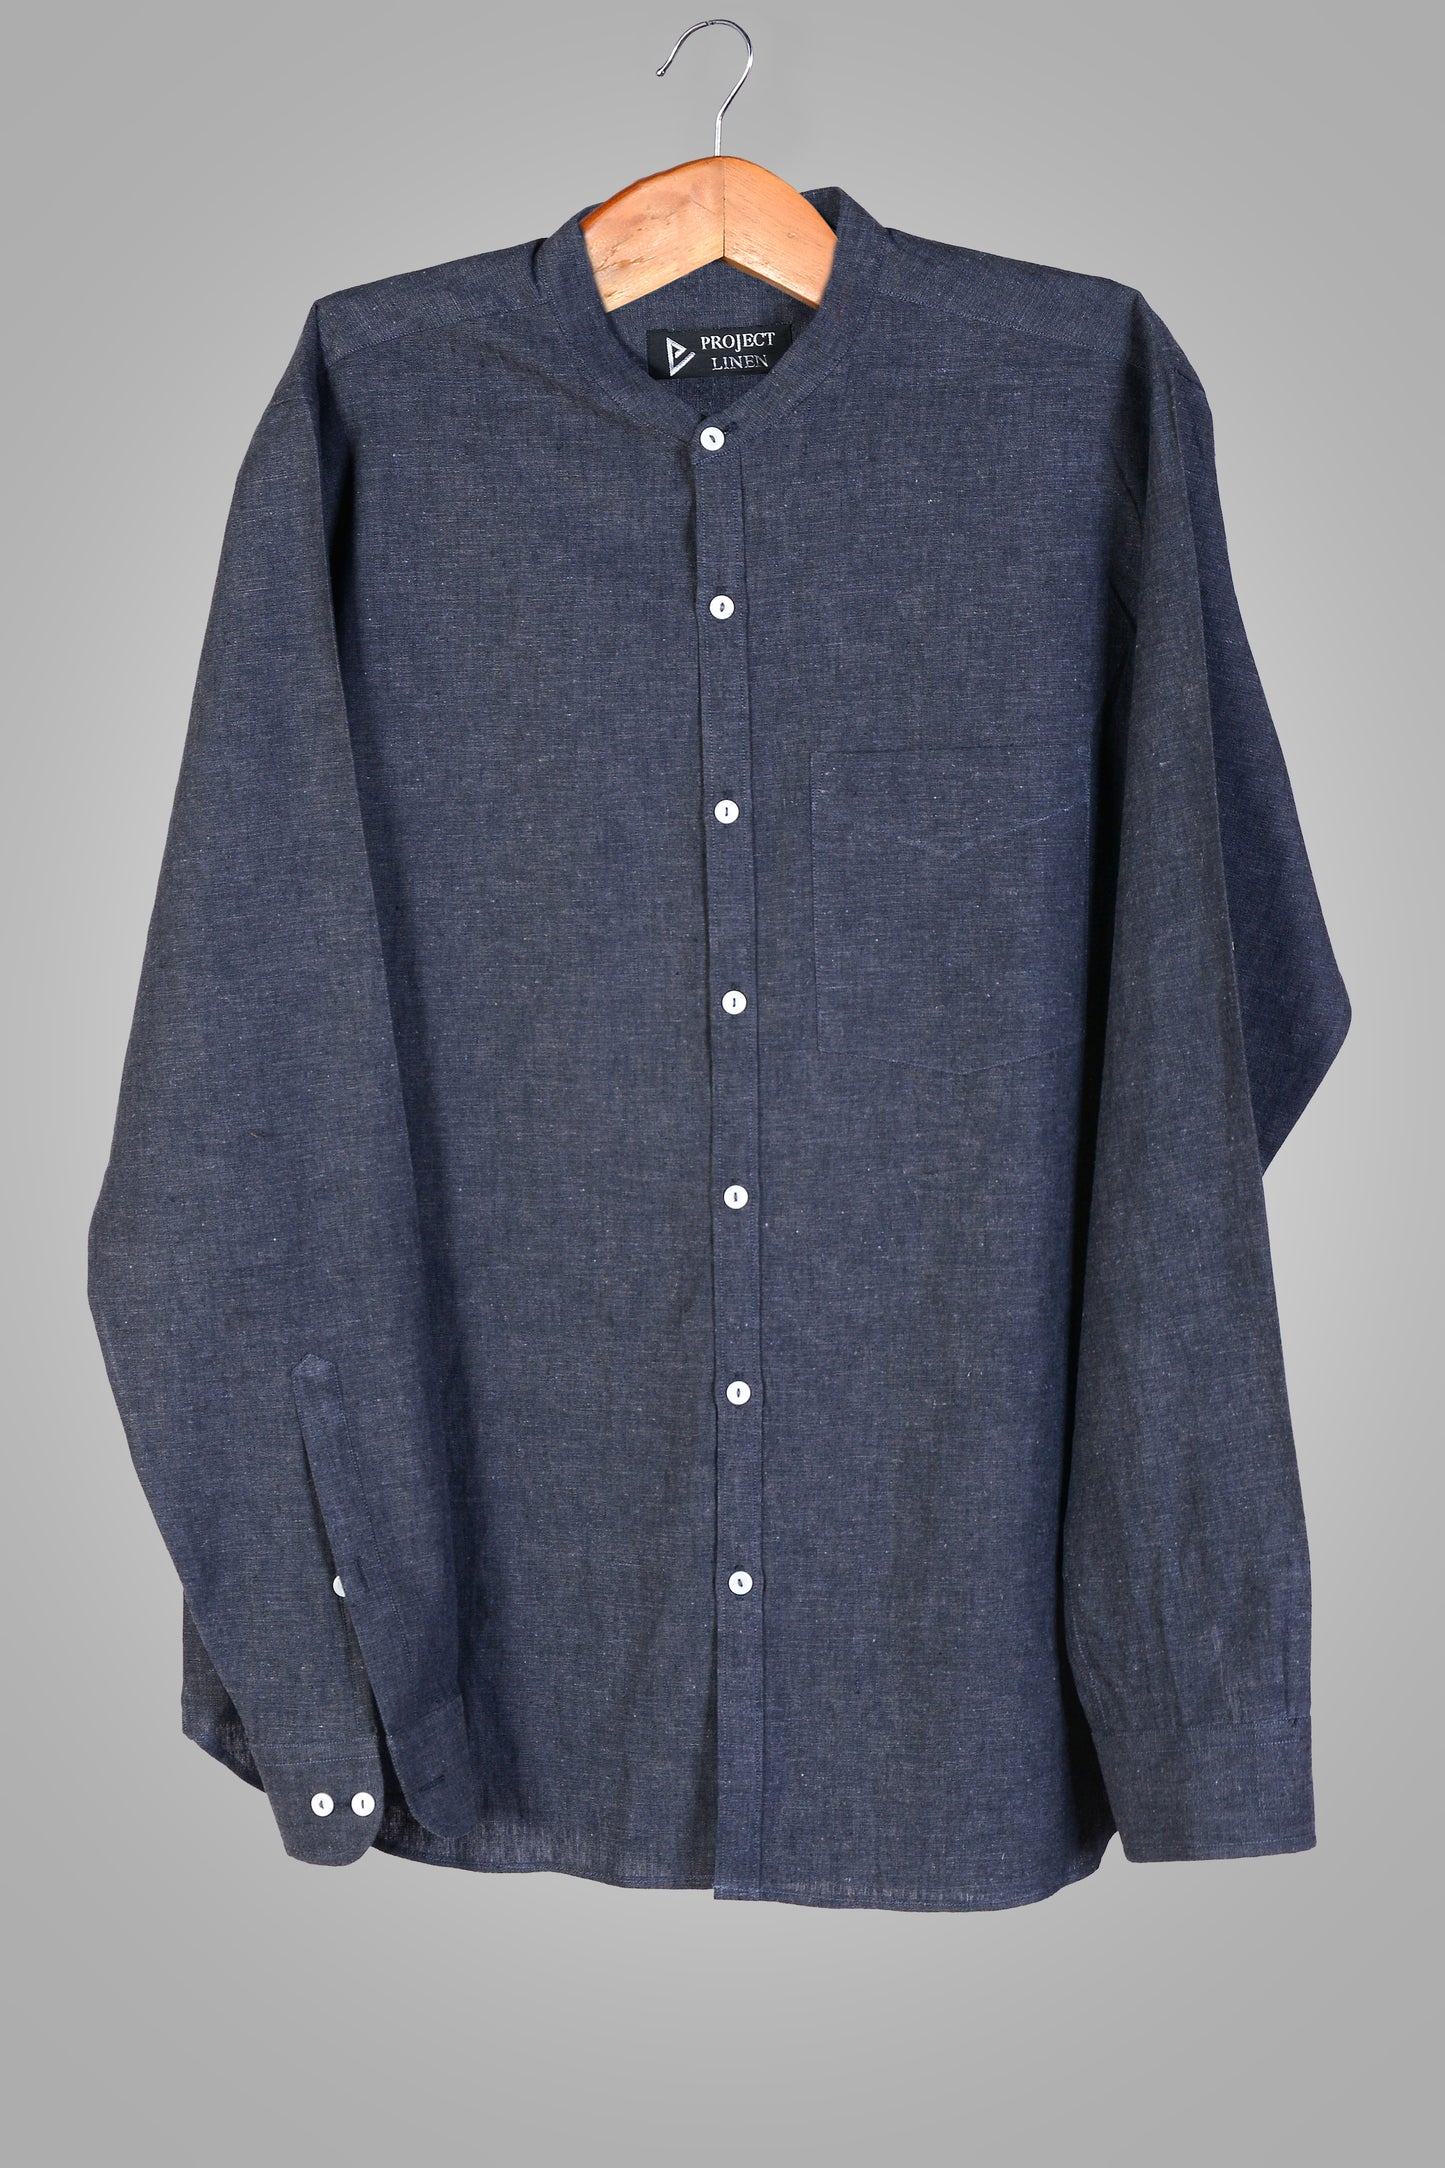 Charcoal Grey Linen Shirt – Project Linen